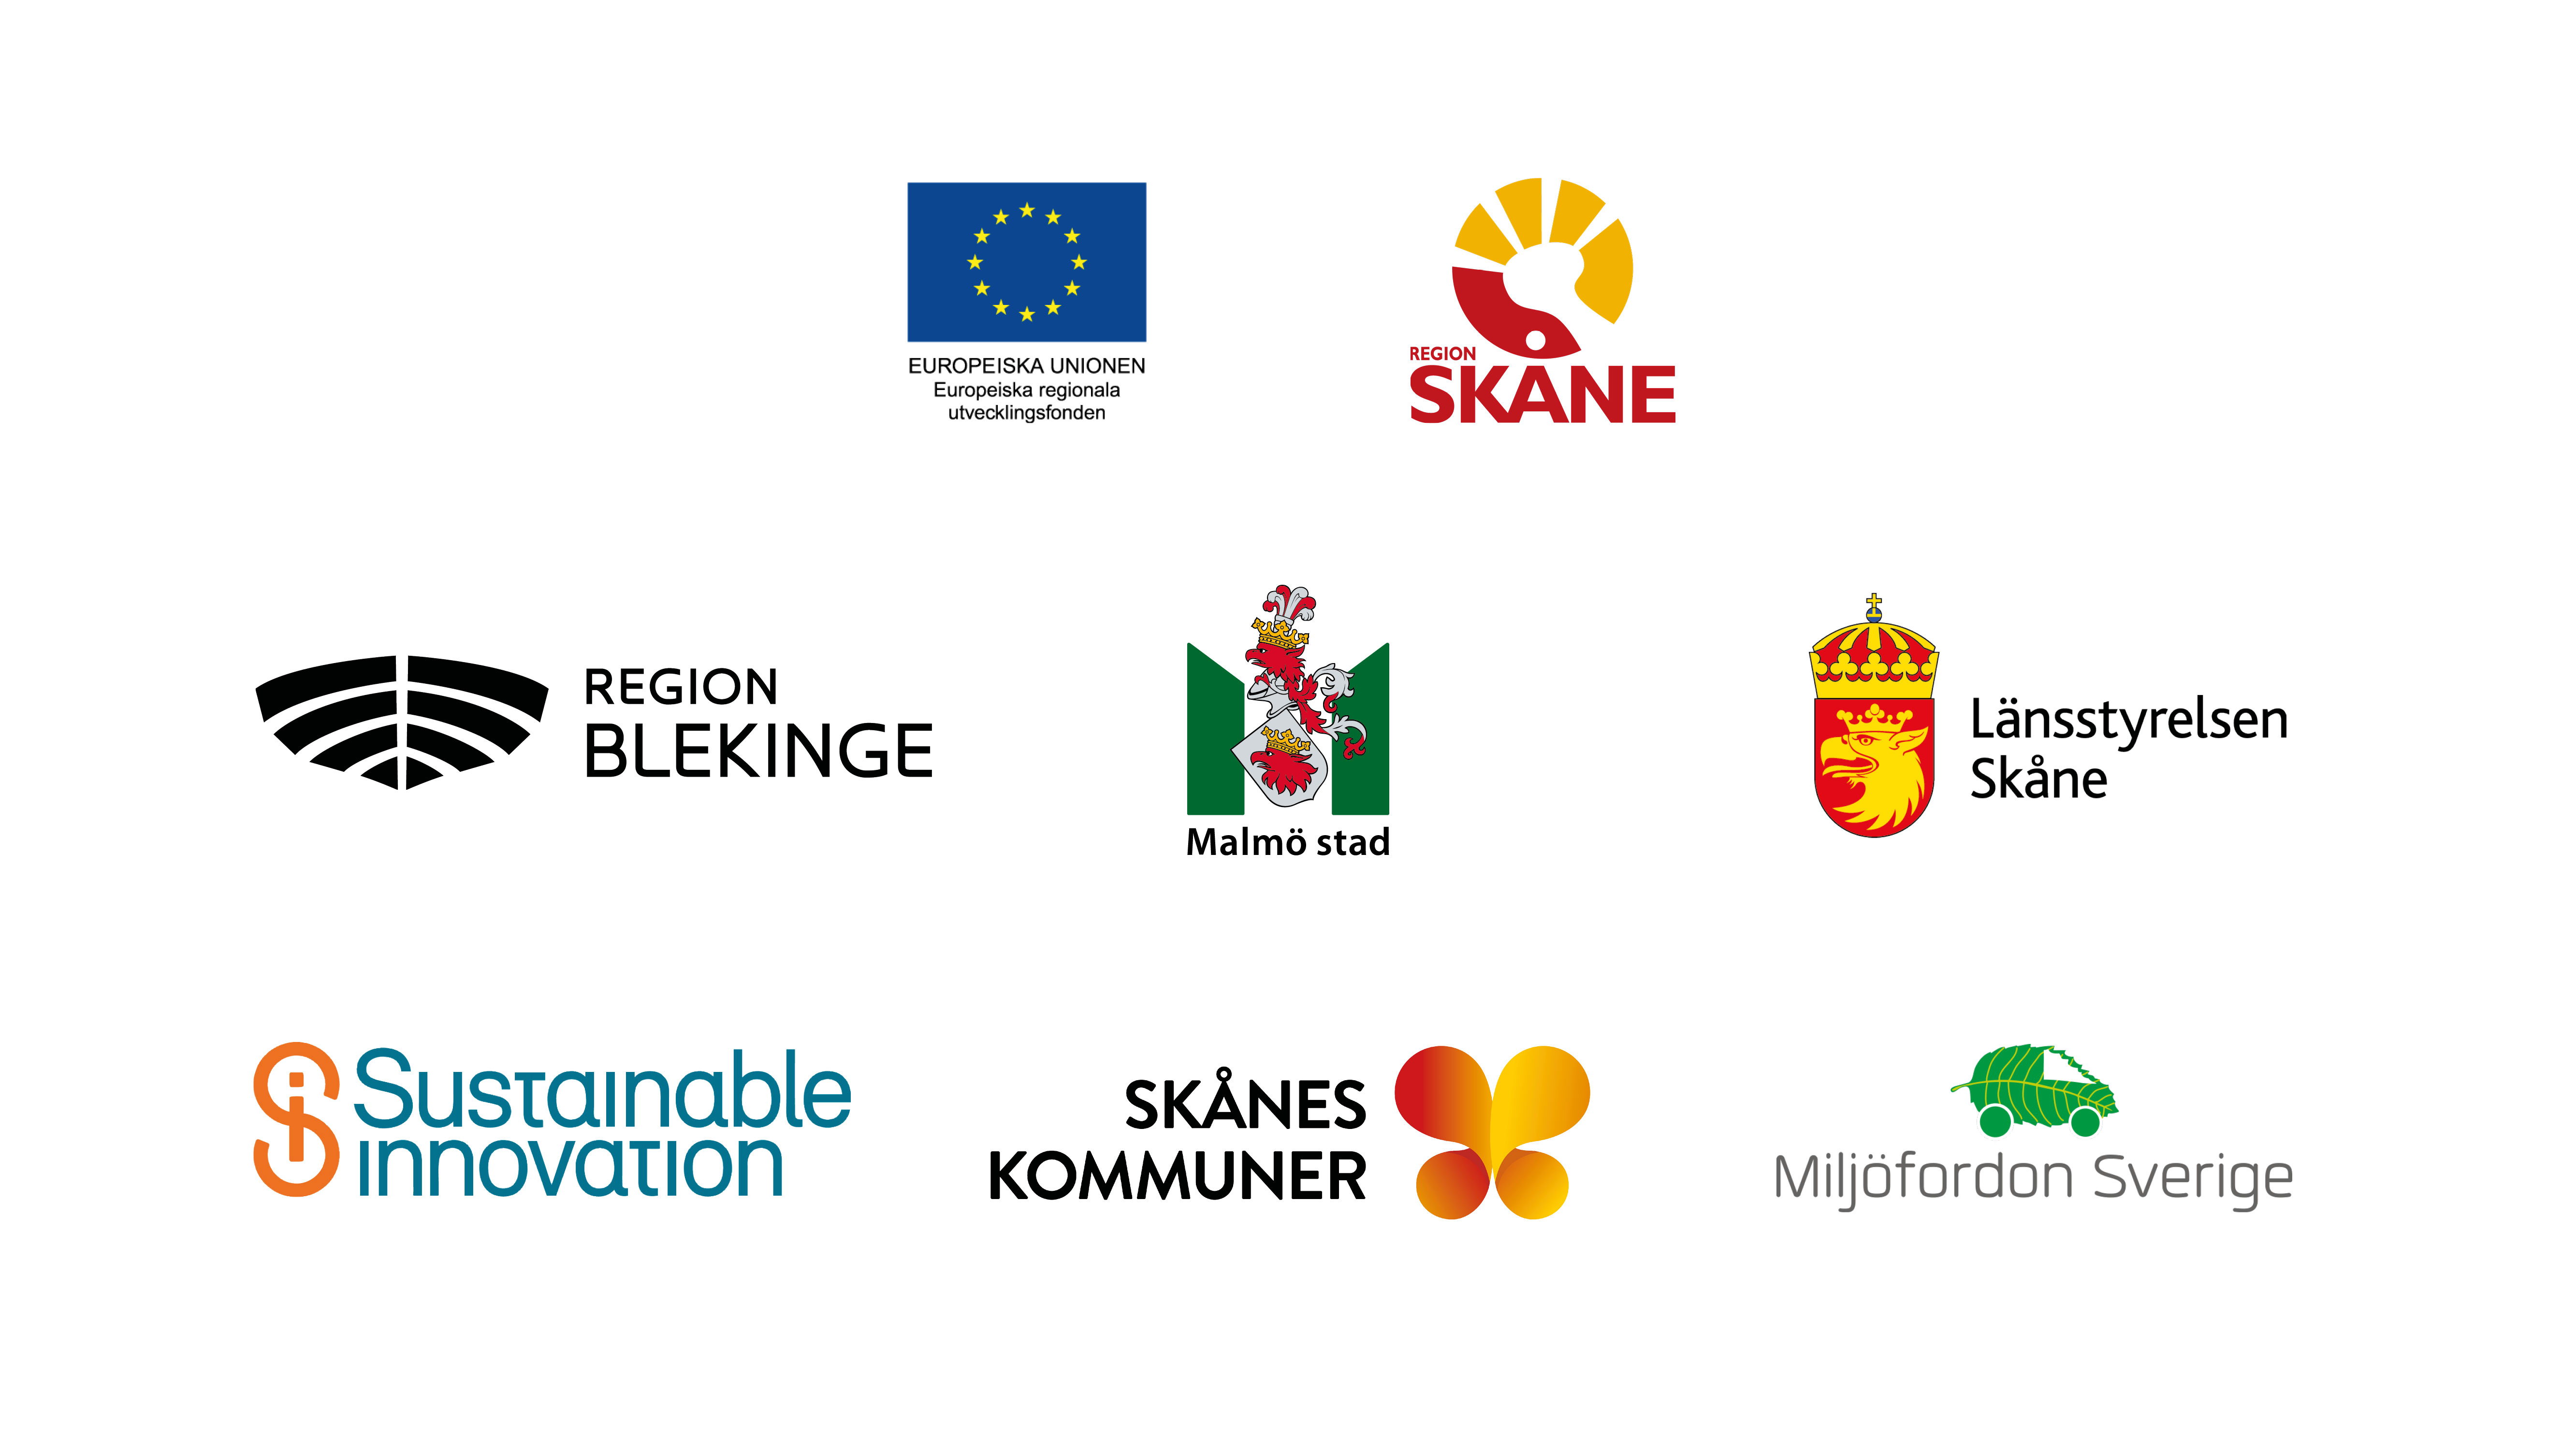 Samarbetspartners under projektet har varit: Europeiska Unionen, Region Skåne, Skånes Kommuner, Miljöfordon Sverige, Sustainable Innovation samt Länsstyrelsen Skåne, Malmö stad, Region Blekinge.